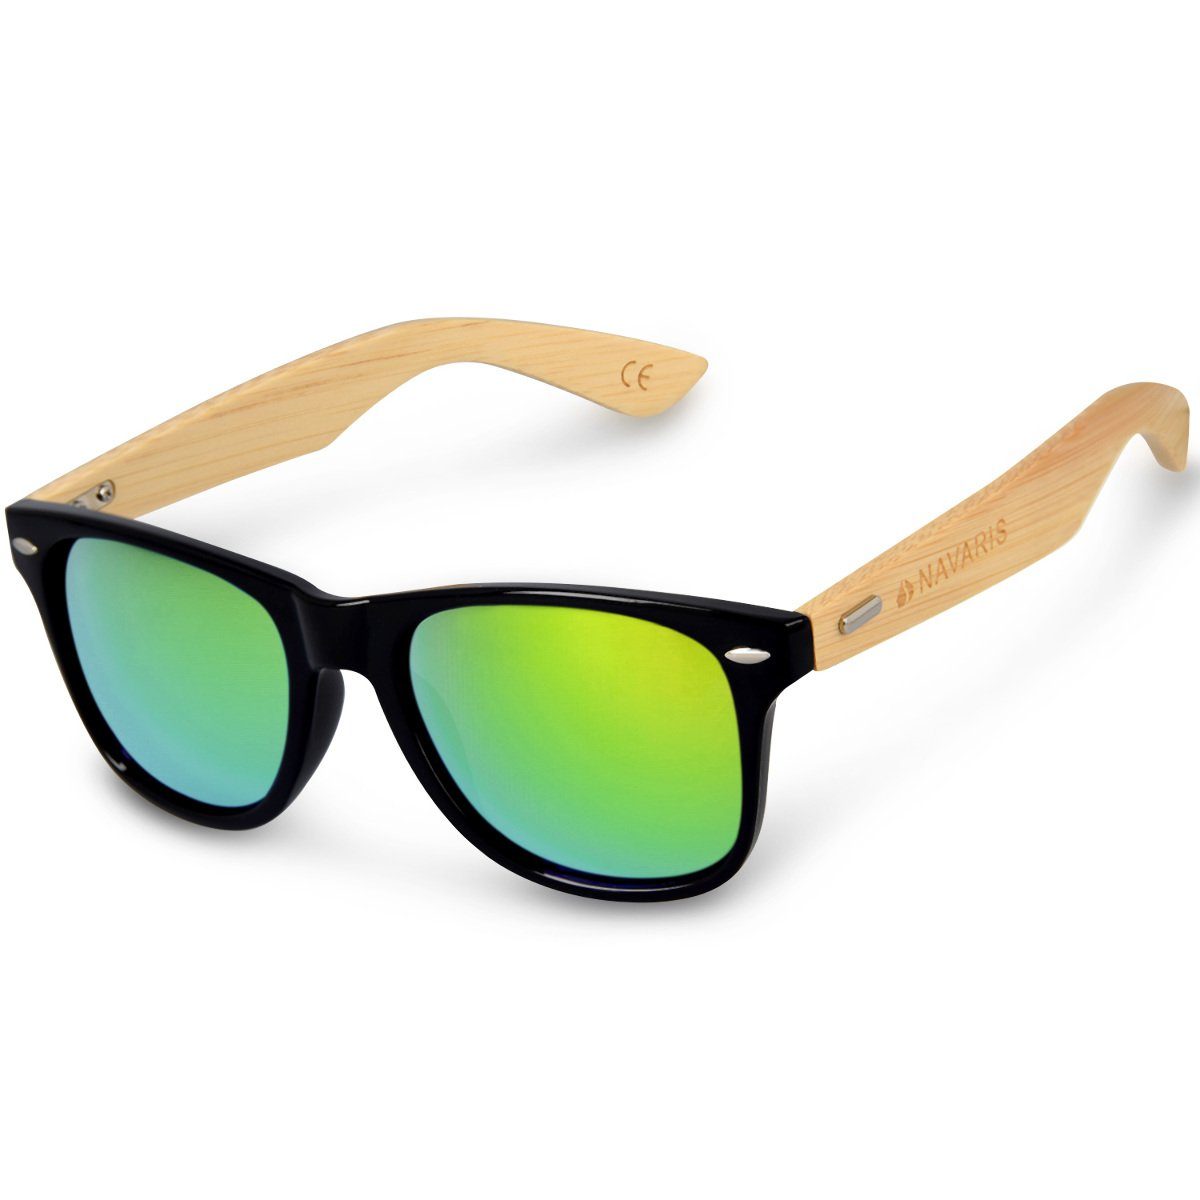 Sonnenbrille in grün online kaufen | OTTO